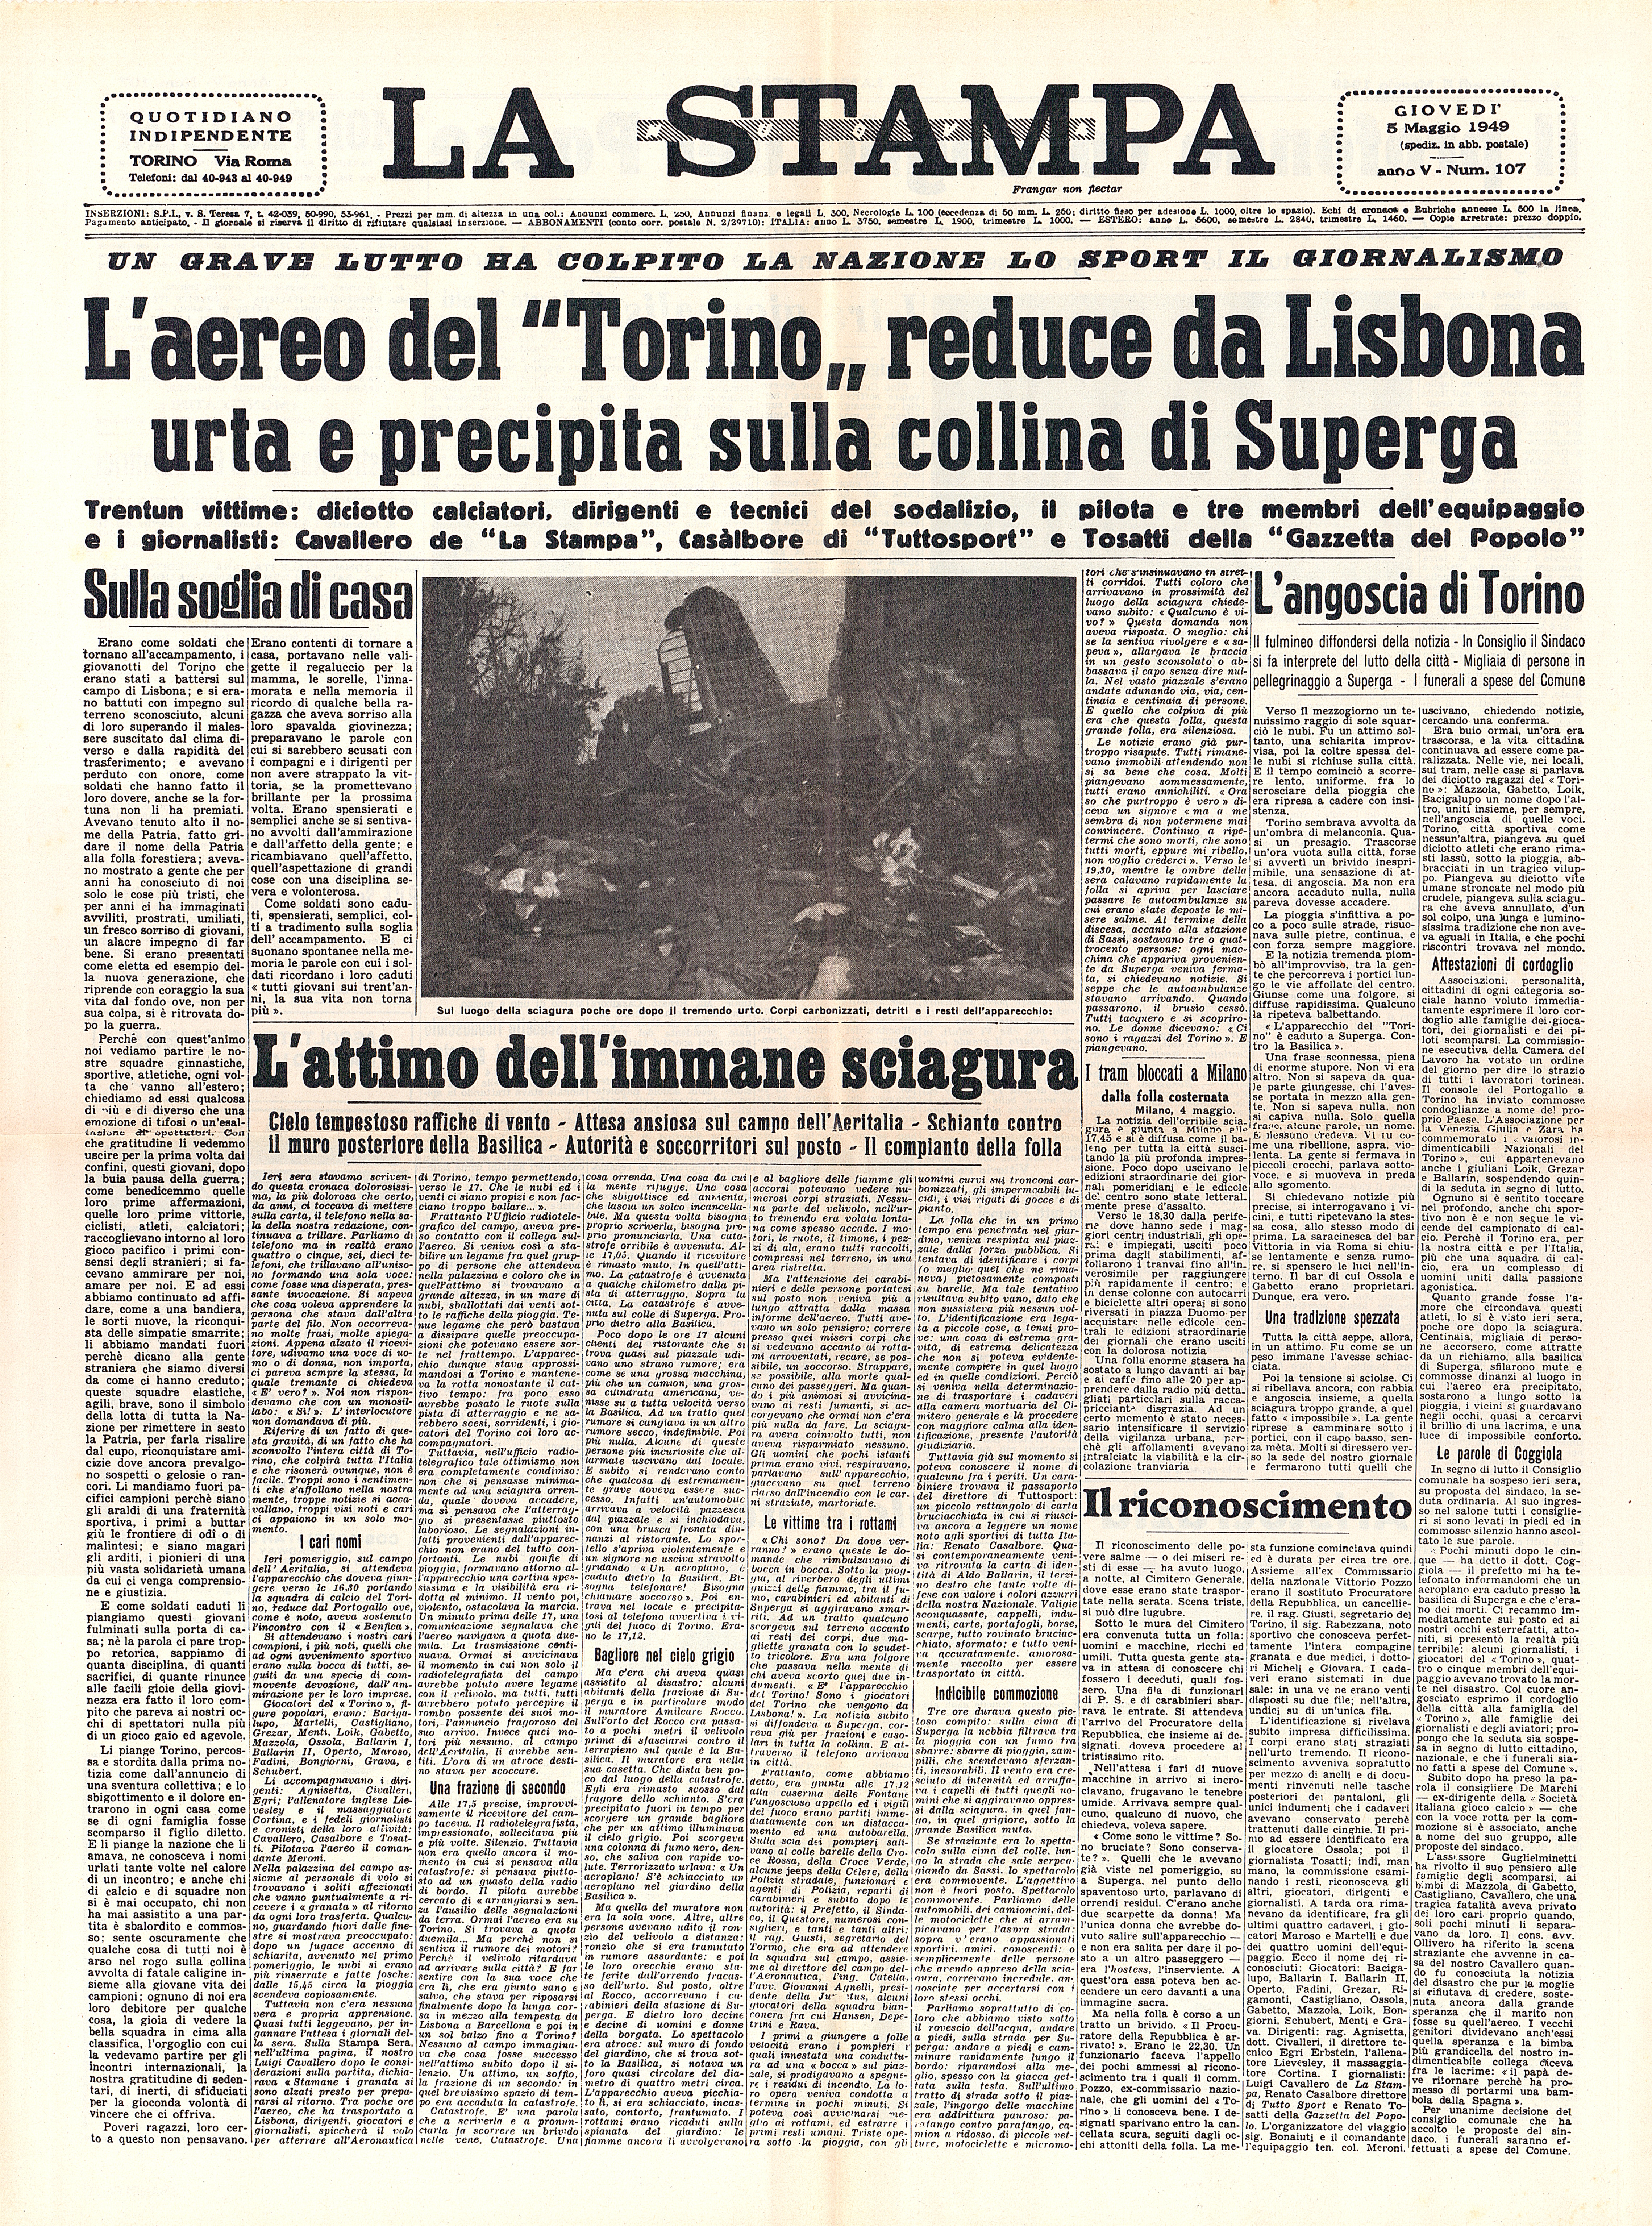 Prima pagina de "La Stampa", del quale muore nell’incidente anche il giornalista Luigi Cavallero